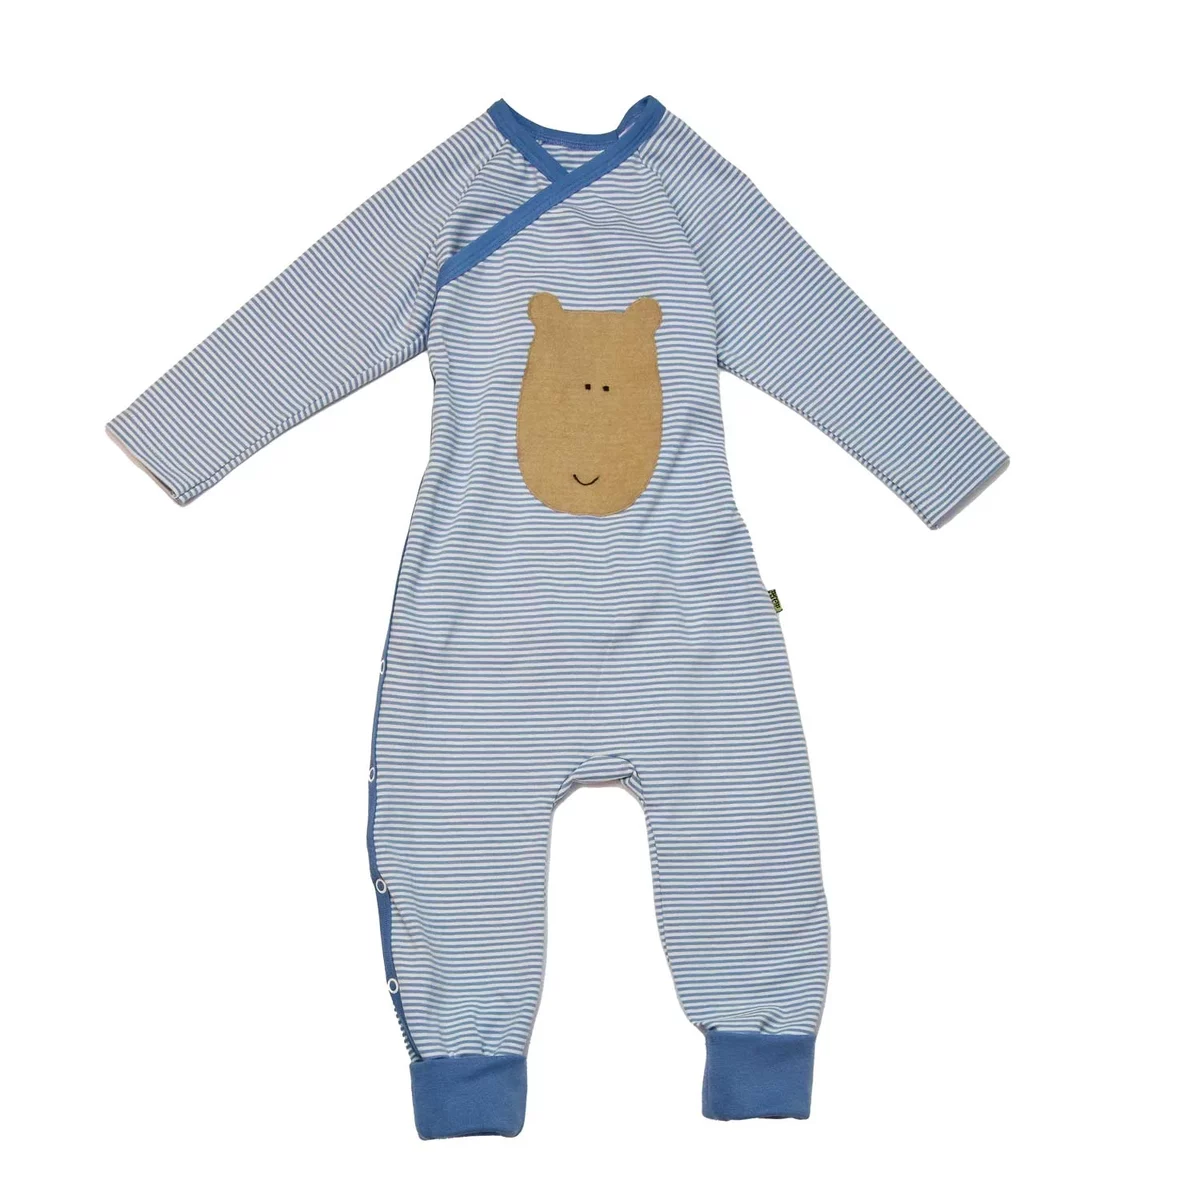 Bio-Baumwolle Baby-Wickelstrampler Schlafanzug in Eisblau mit feinen Streifen und Bärenapplikation, komfortabel und weich für ruhigen Schlaf.